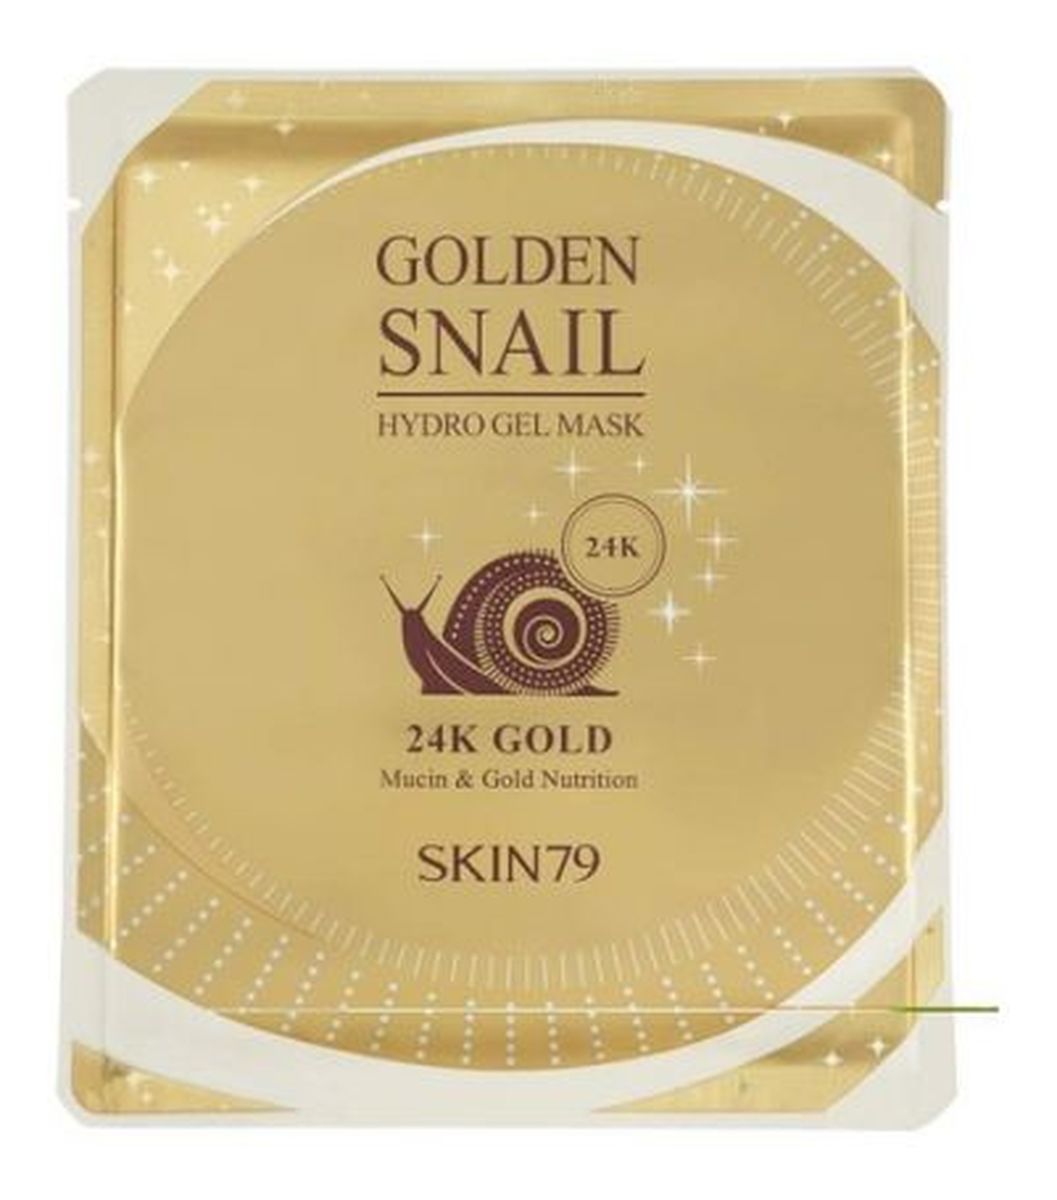 Hydro Gel Mask 24k Gold koreańska luksusowa hydrożelowa maska w płacie ze złotem 1 sztuka